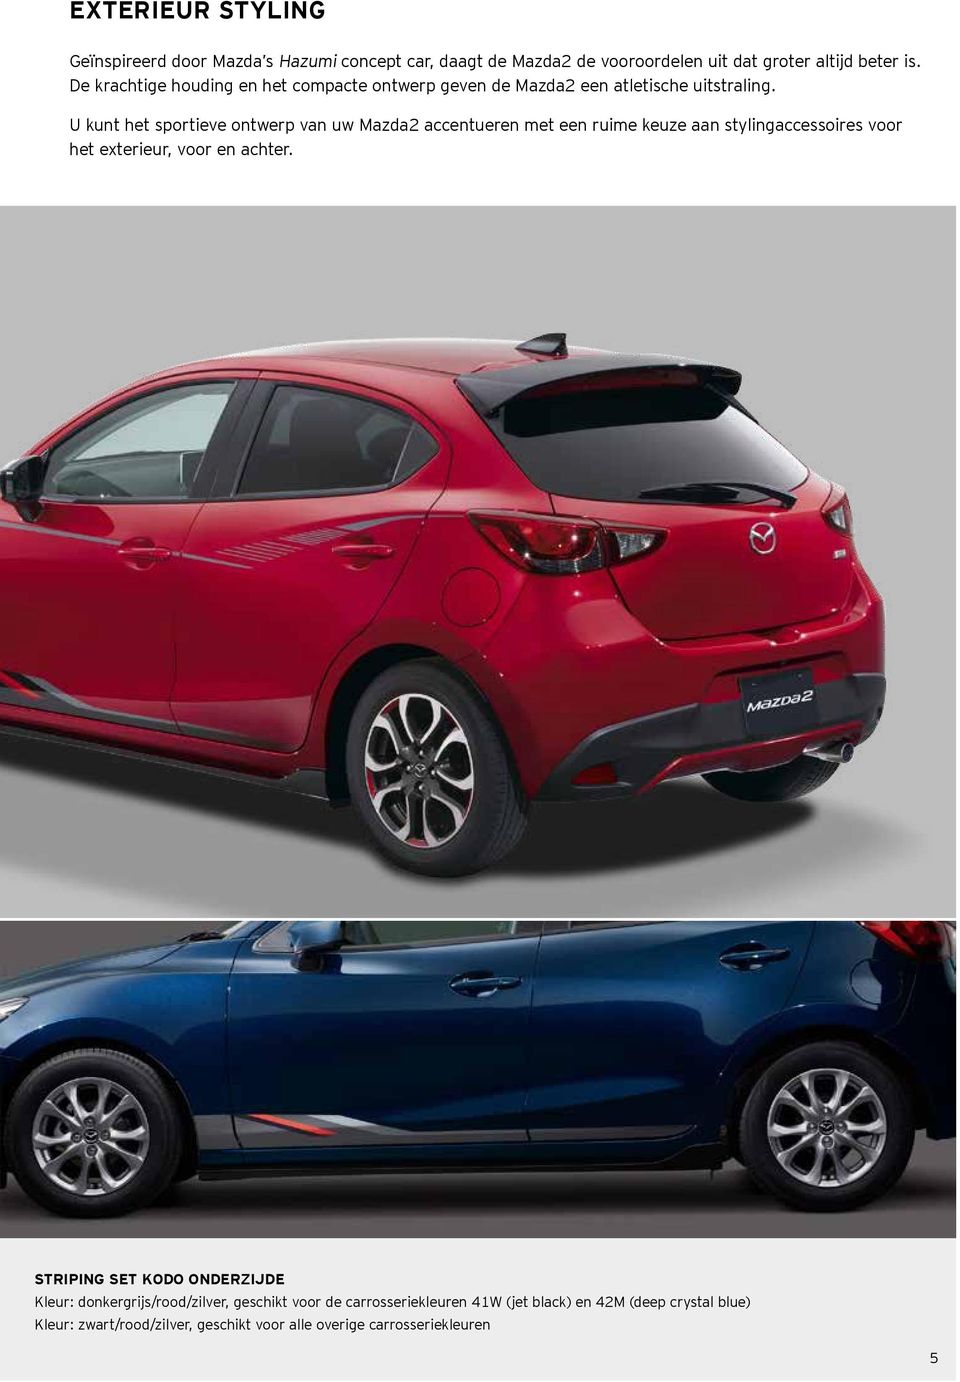 U kunt het sportieve ontwerp van uw Mazda2 accentueren met een ruime keuze aan stylingaccessoires voor het exterieur, voor en achter.